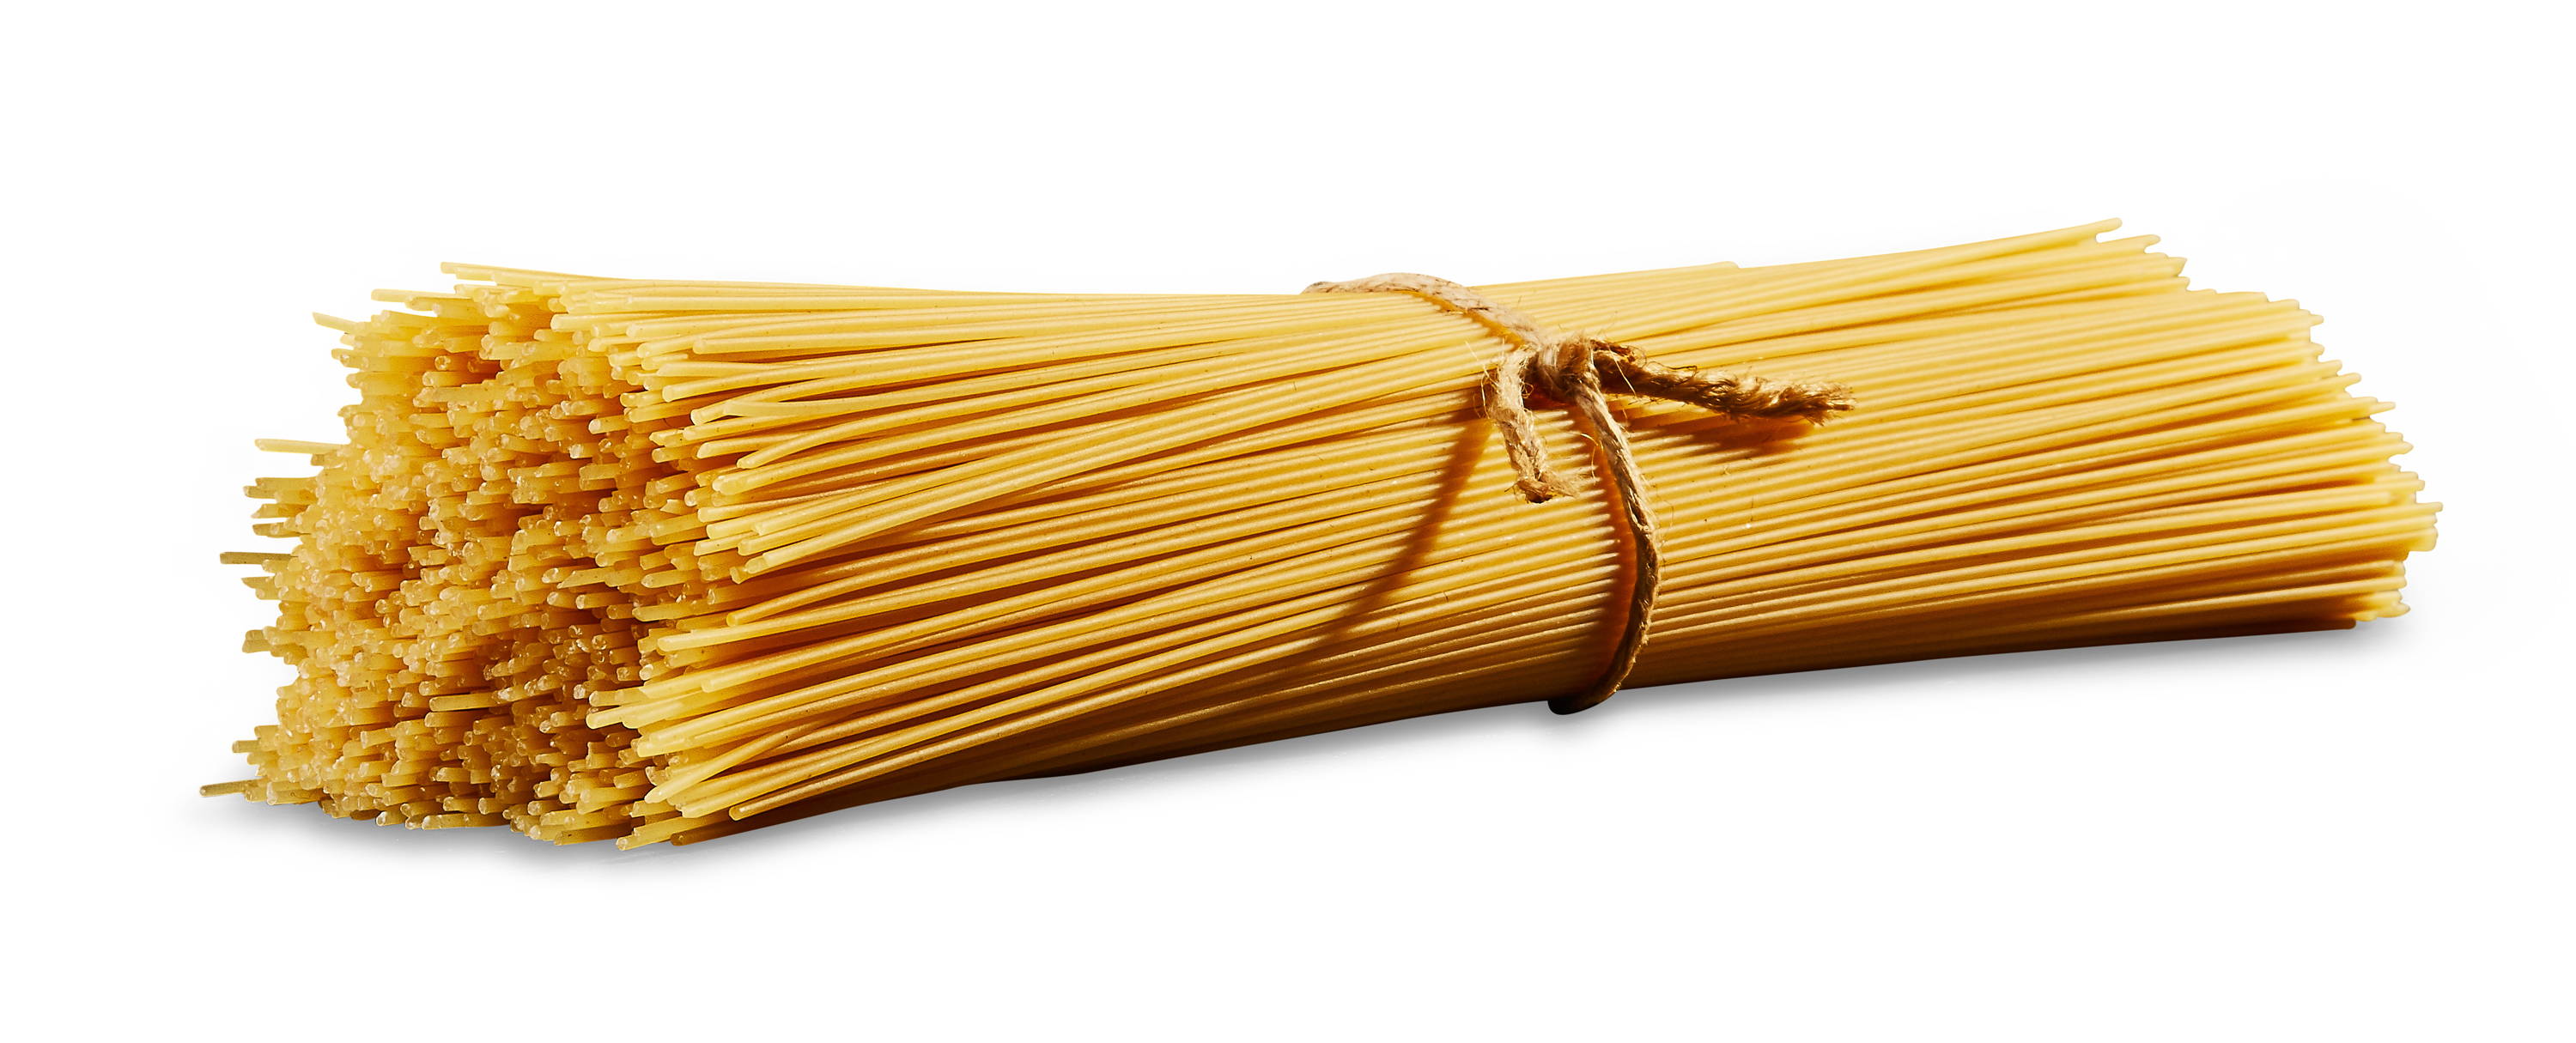 Bundle of Capellini pasta